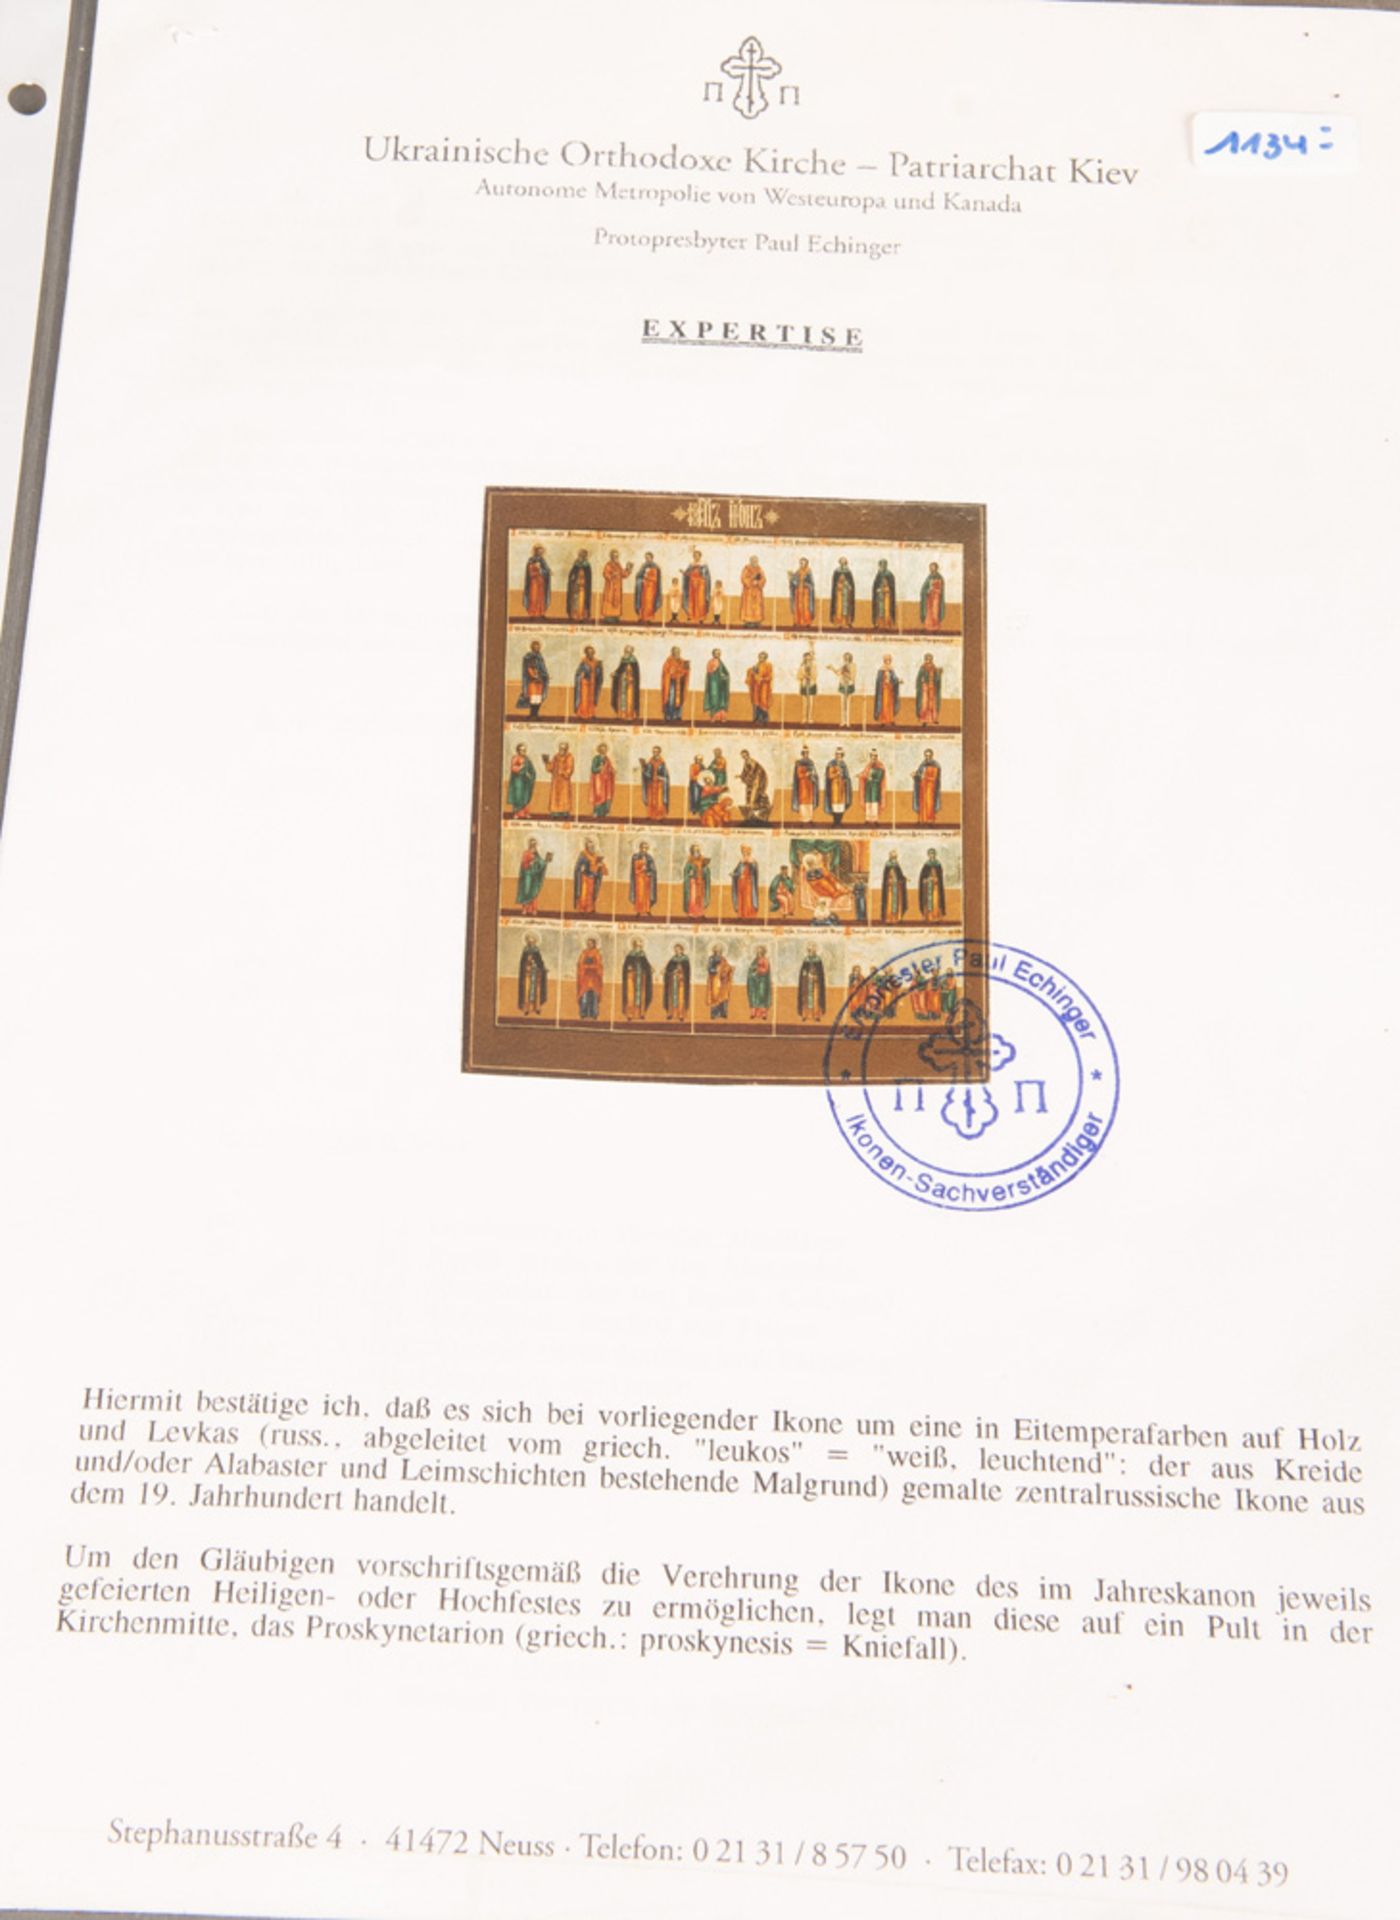 Monatsikone. Russland 19. Jh. Öl/Holz, 33,5 x 27 cm. Mit ausführlicher Expertise von Paul Echinger - Image 2 of 4